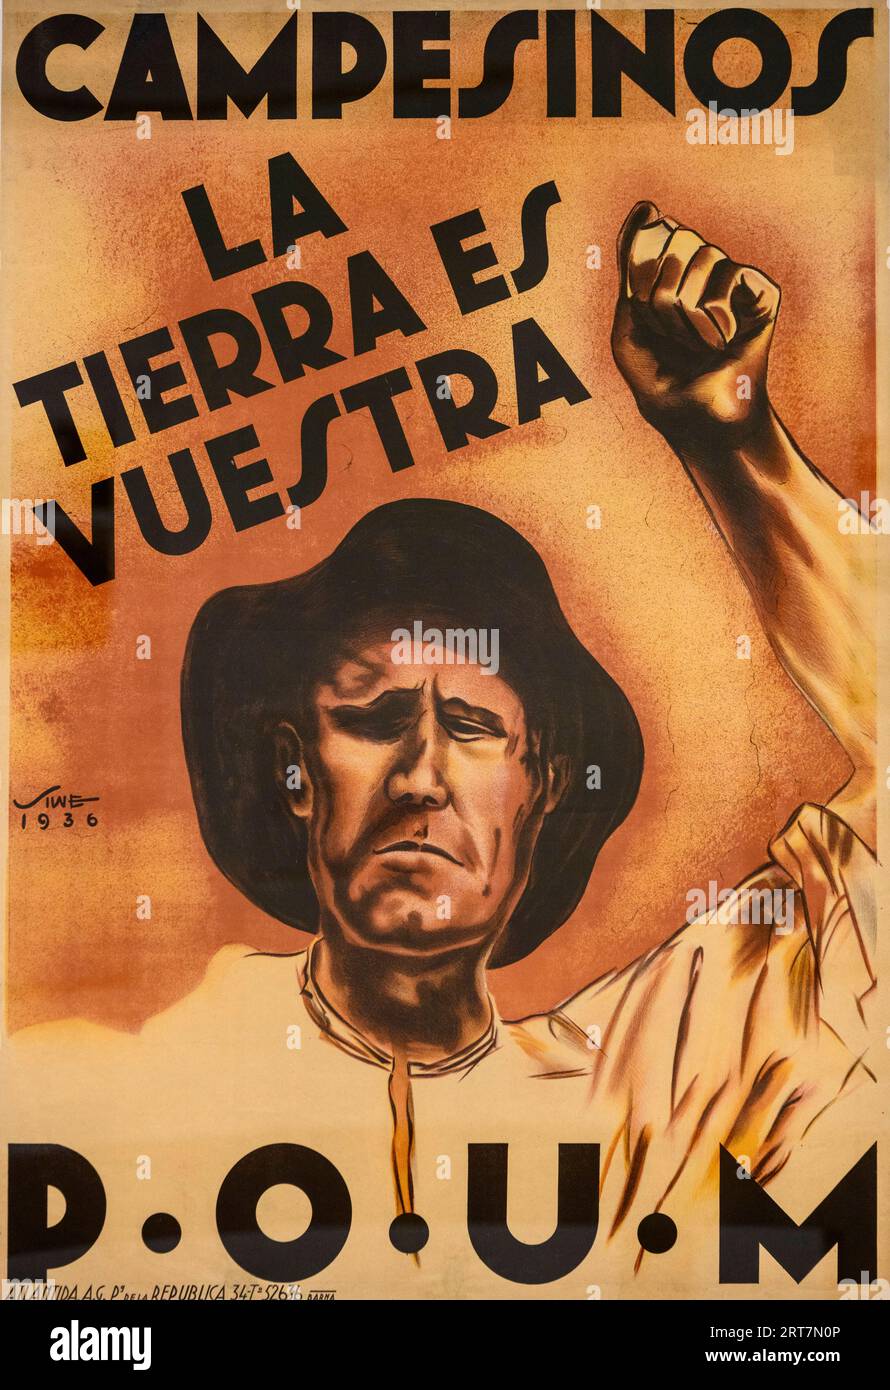 Une affiche du POUM (Partido Obrero de Unificación Marxista) de 1936 - Campesino : la tierra es vuestra. Campesino, la terre est la vôtre. Banque D'Images